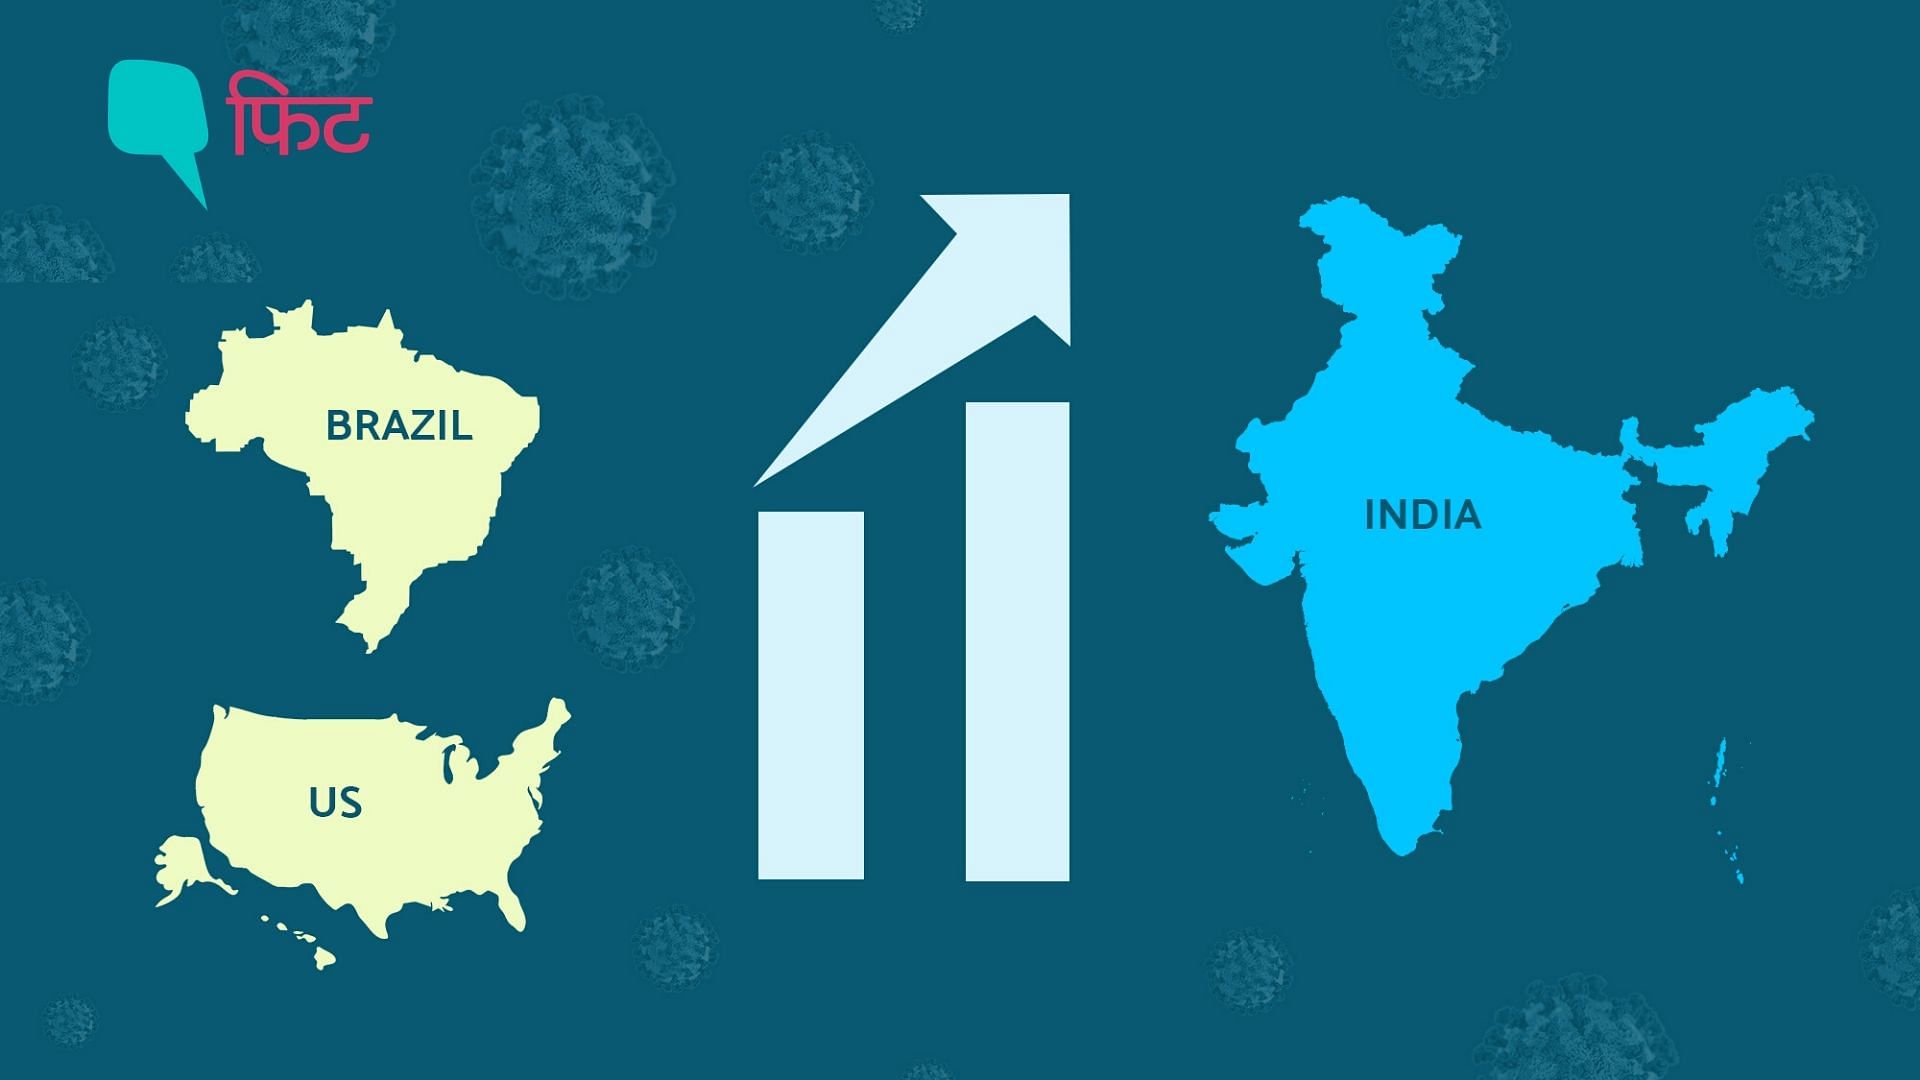 6 जुलाई को भारत में कंफर्म केसों का आंकड़ा 6.97 लाख पार कर गया.